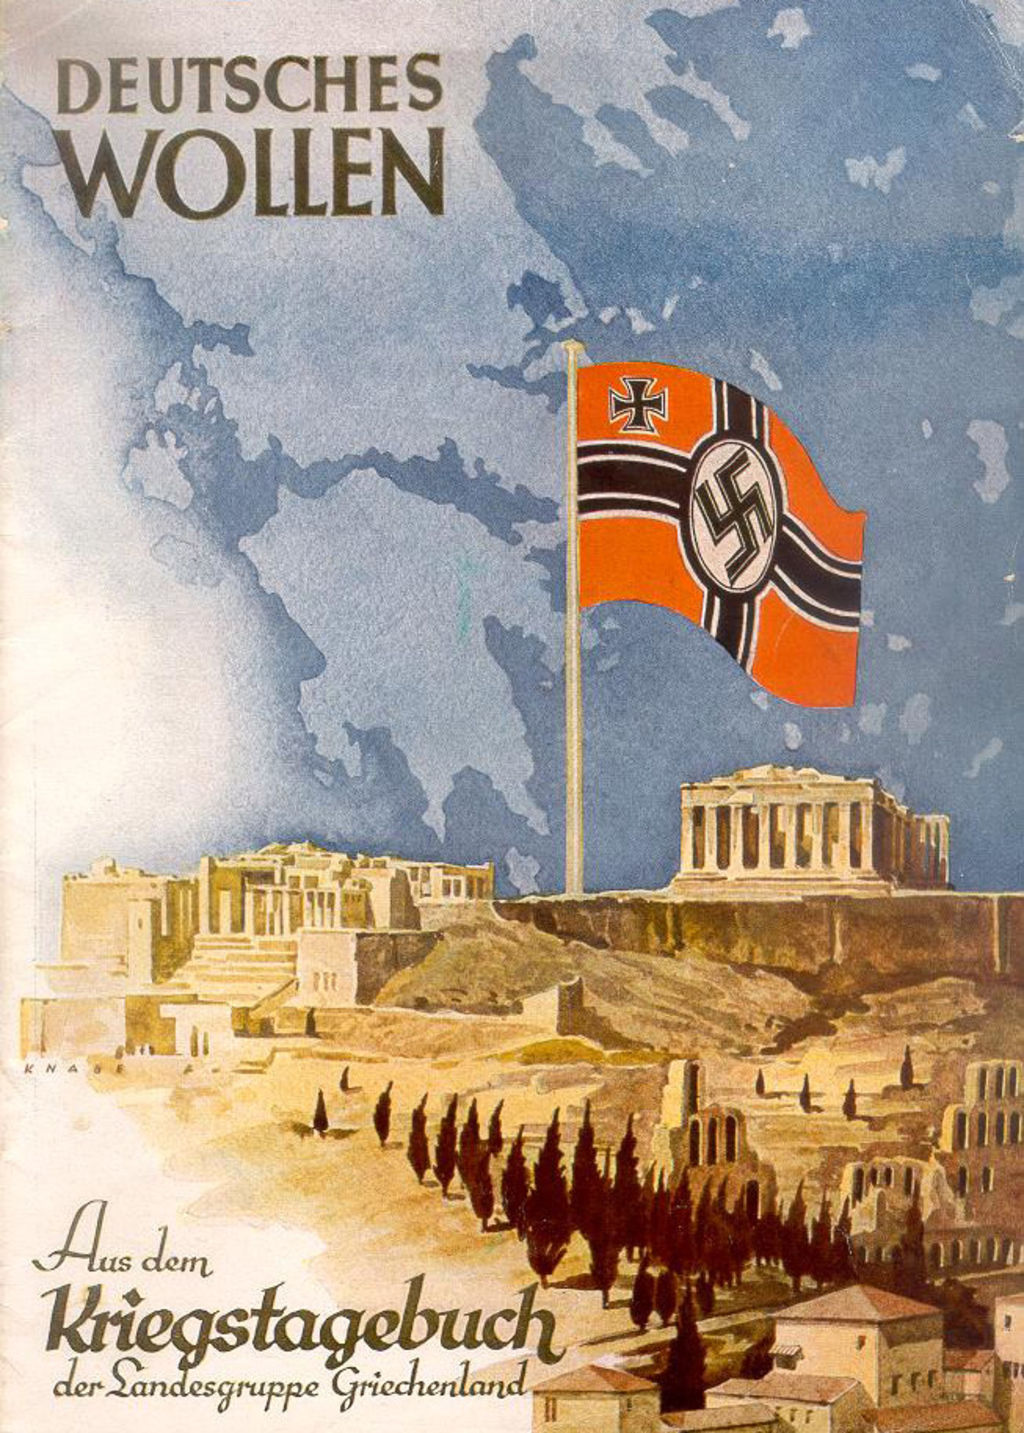 Exponat: Druckschrift: "Deutsches Wollen" zur Besetzung Griechenlands, 1941